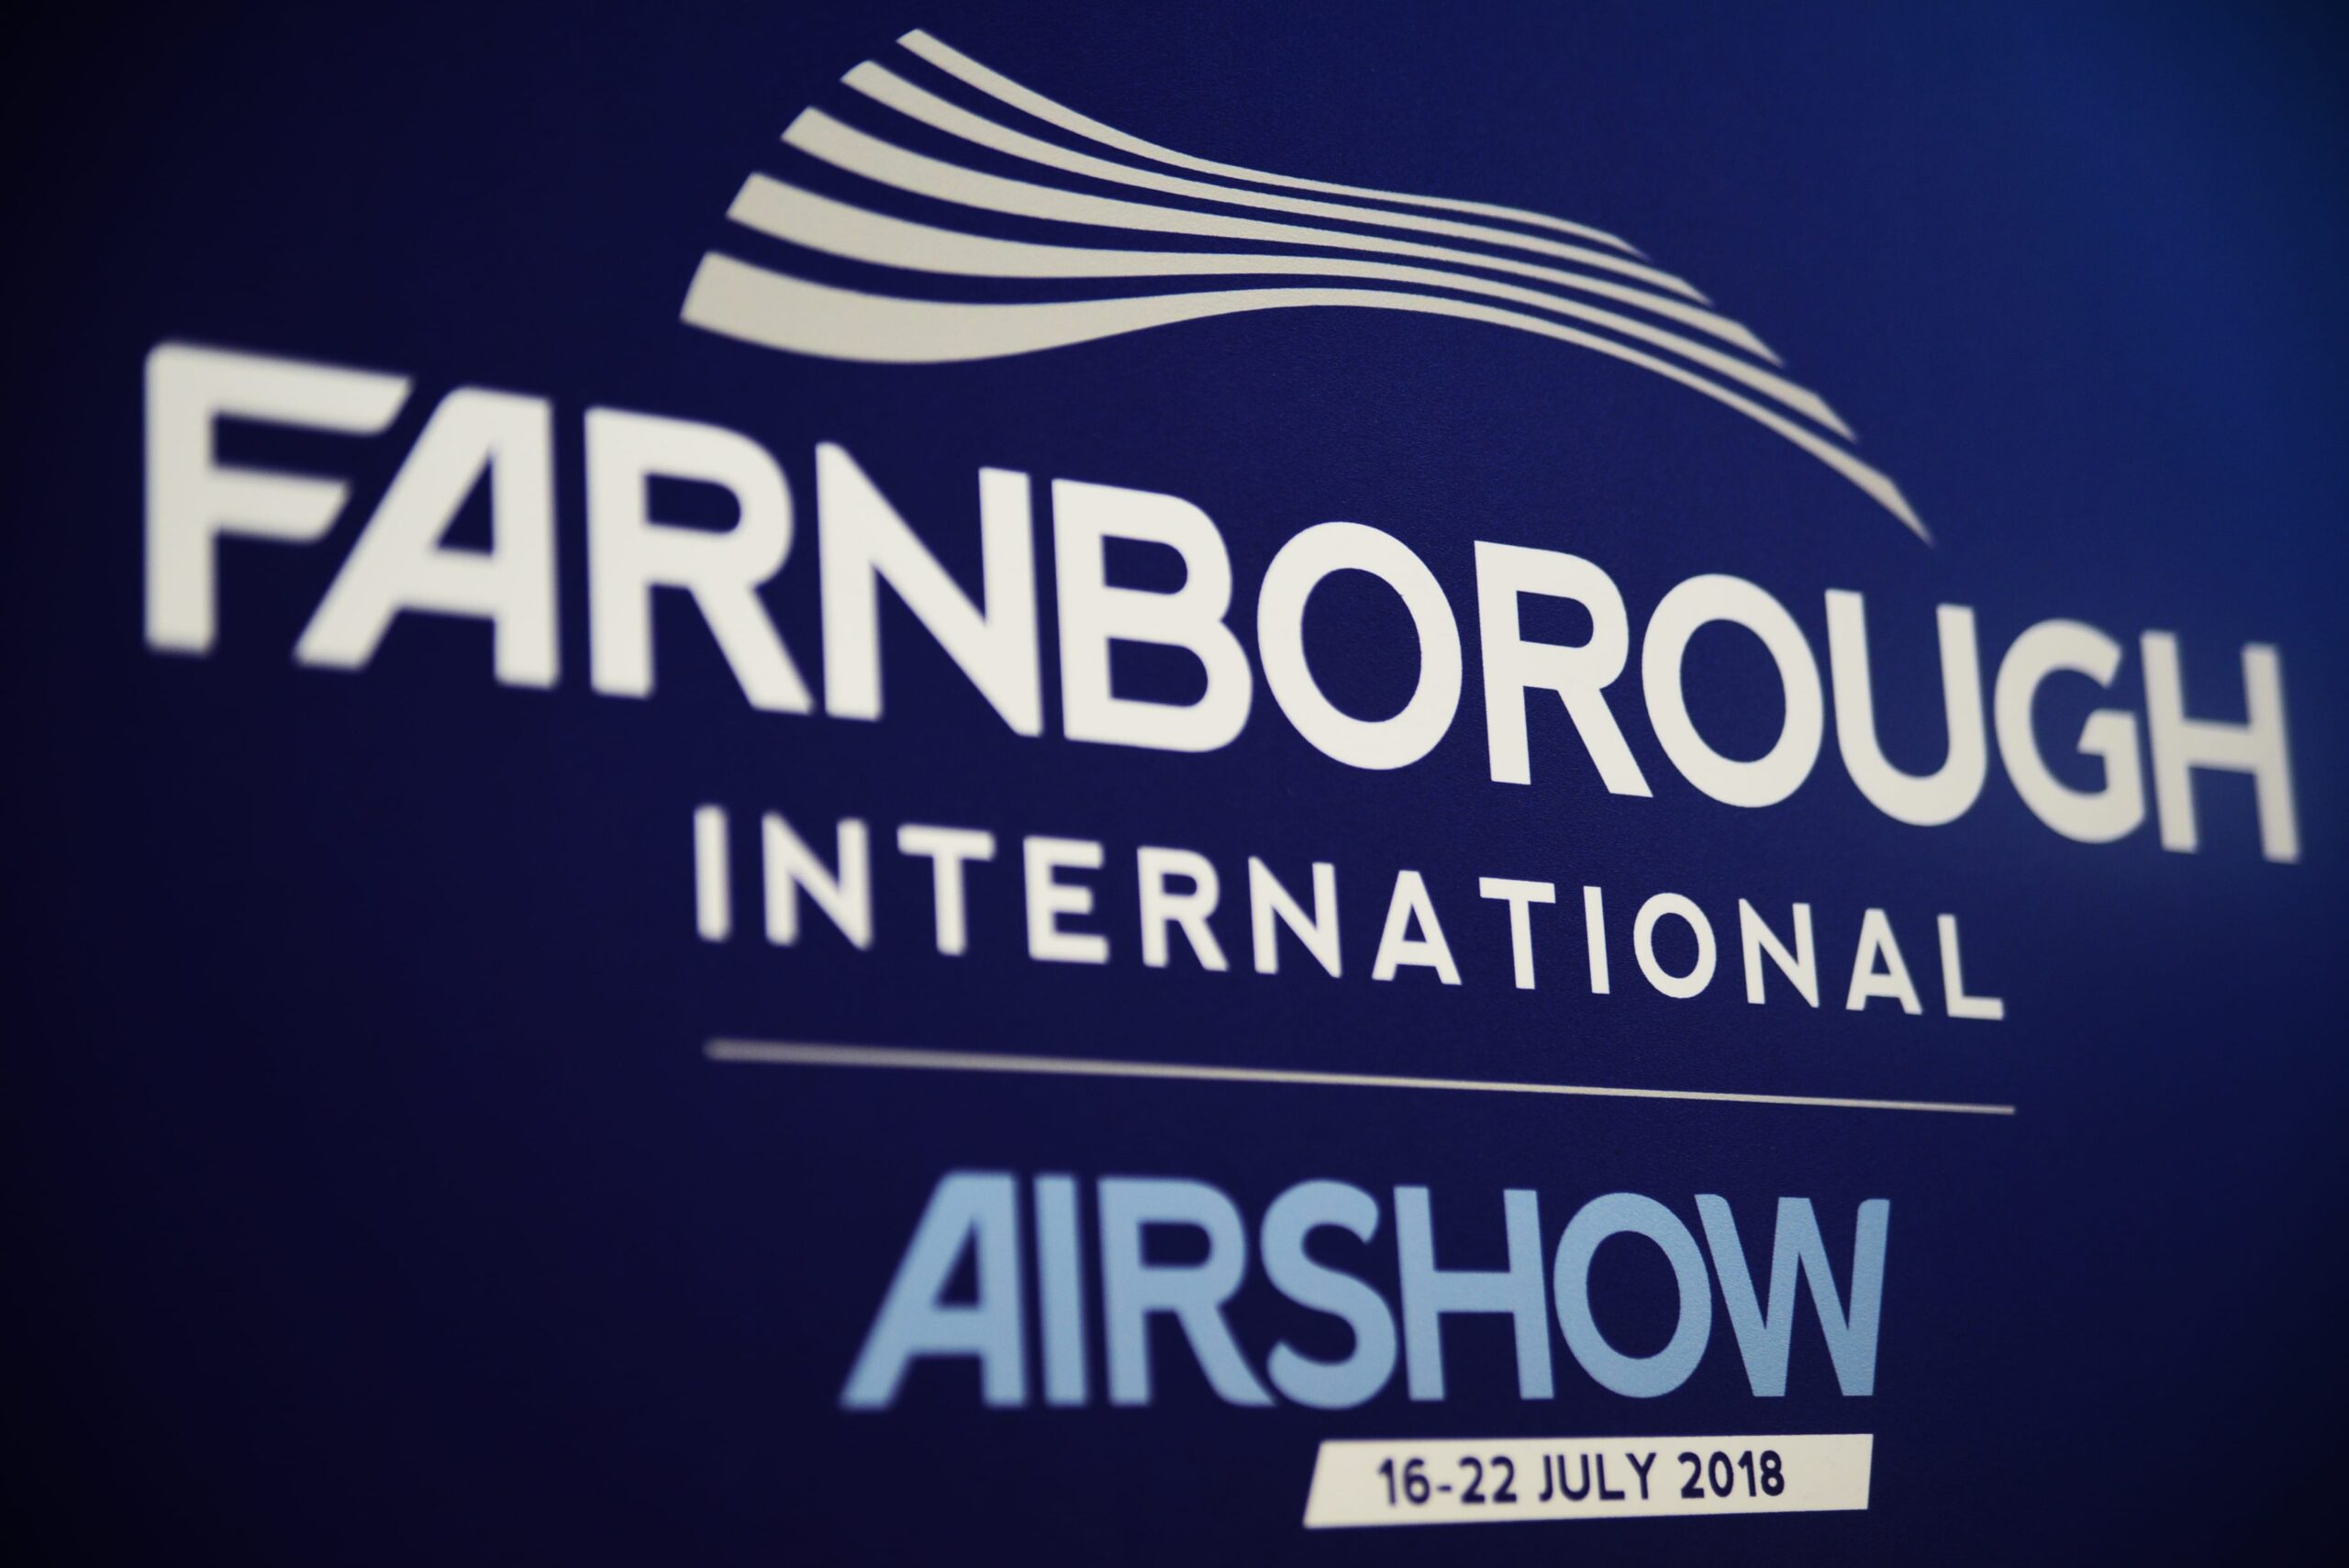 The Farnborough Air Show